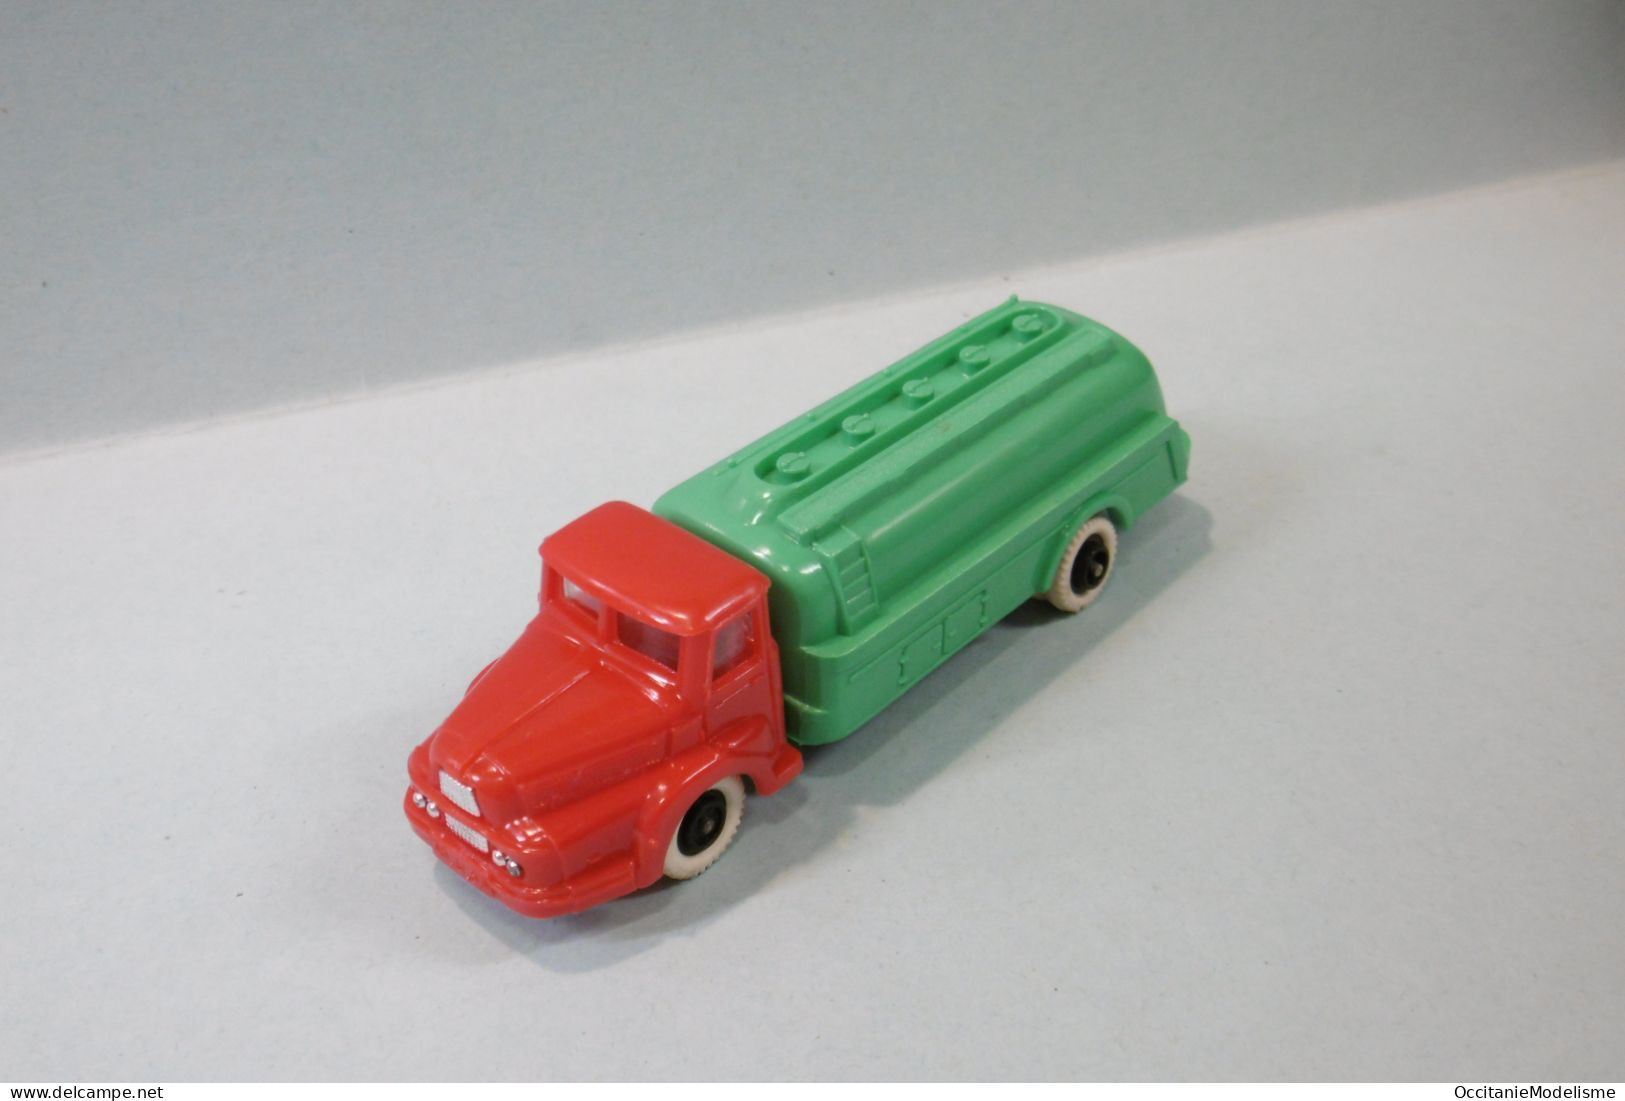 Clé - Camion UNIC IZOARD rouge citerne vert HO 1/87 1/90